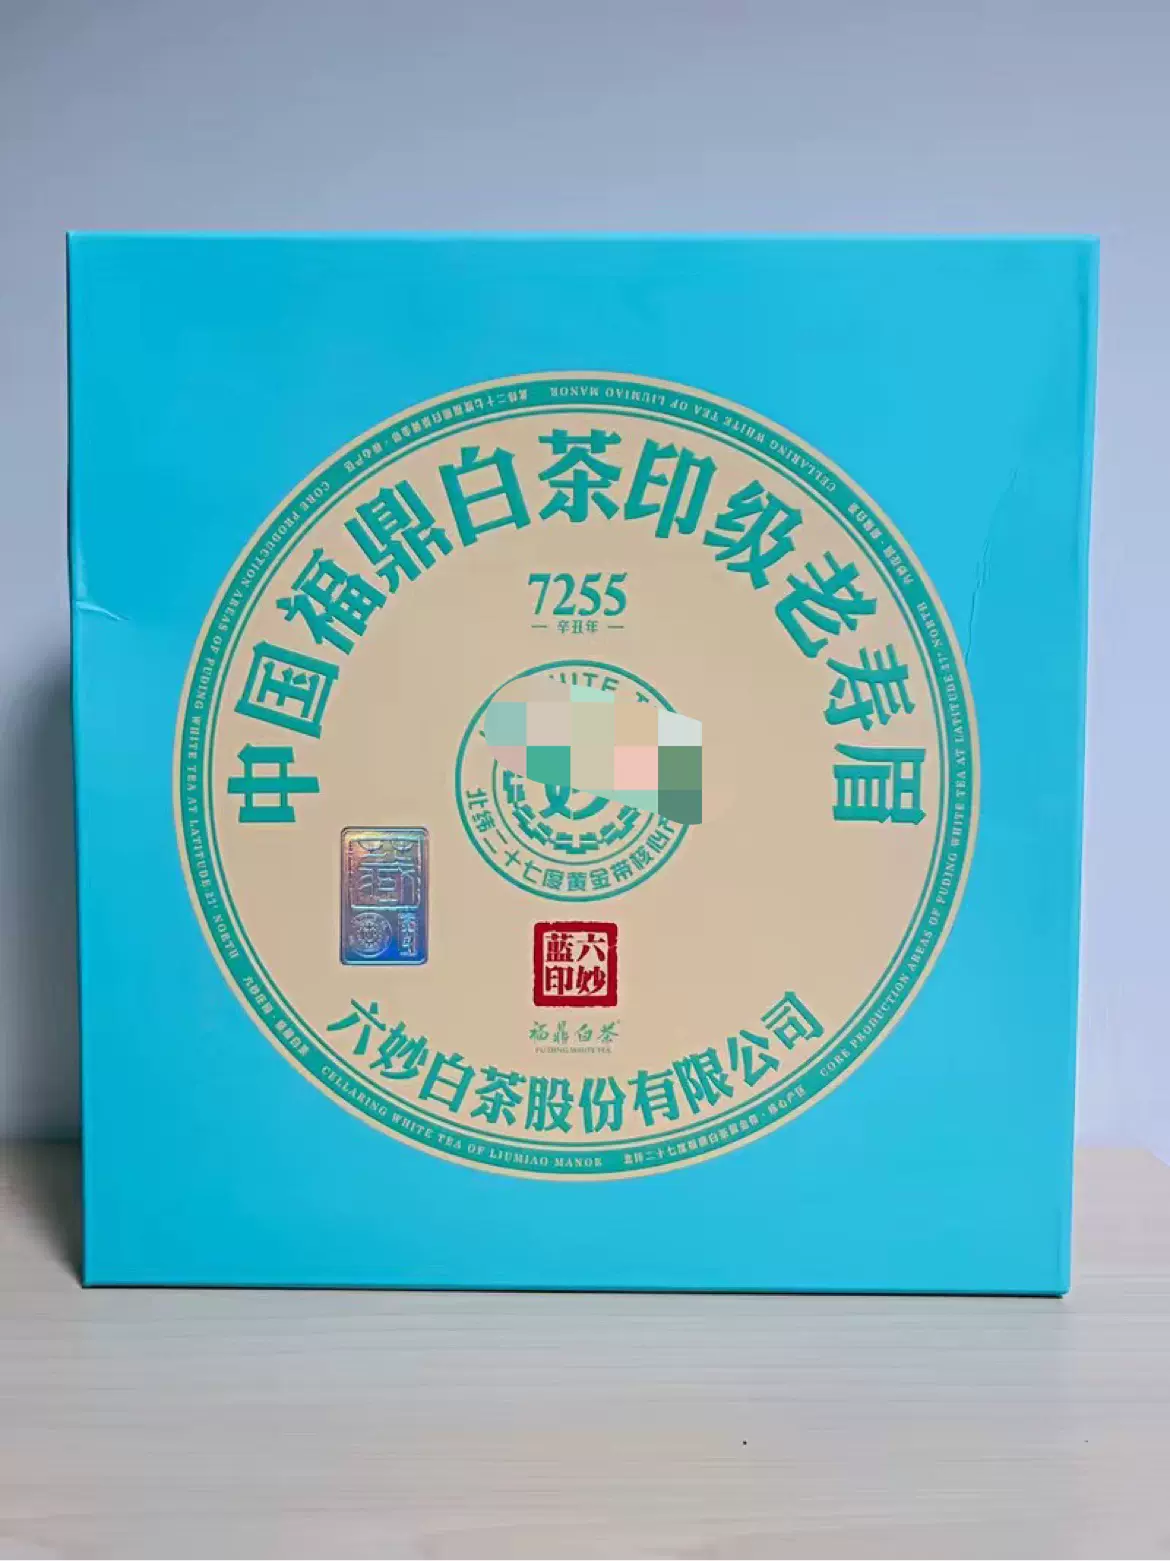 六妙白茶2018年寿眉7255蓝印福鼎白茶茶饼盒装300克-Taobao